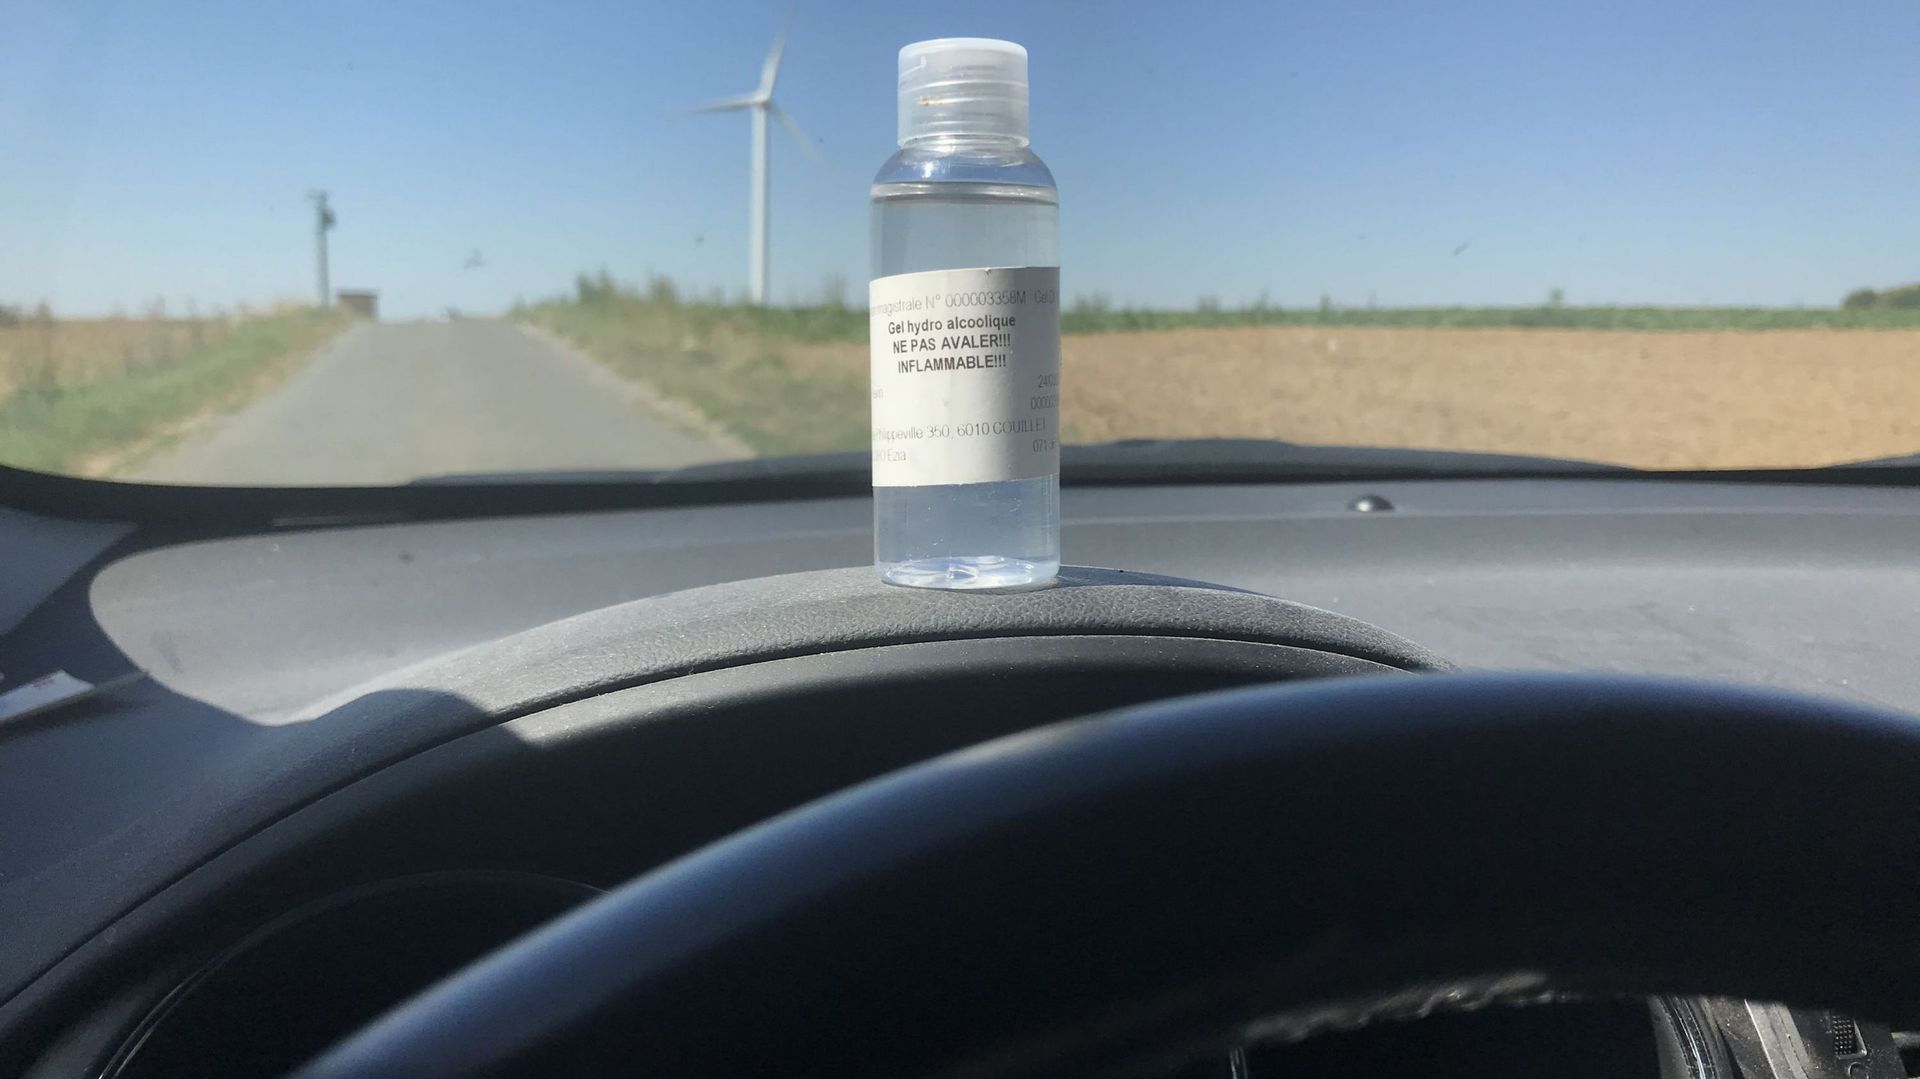 Un gel hydroalcoolique oublié dans l'habitacle d'une voiture en plein soleil peut-il s'enflammer?